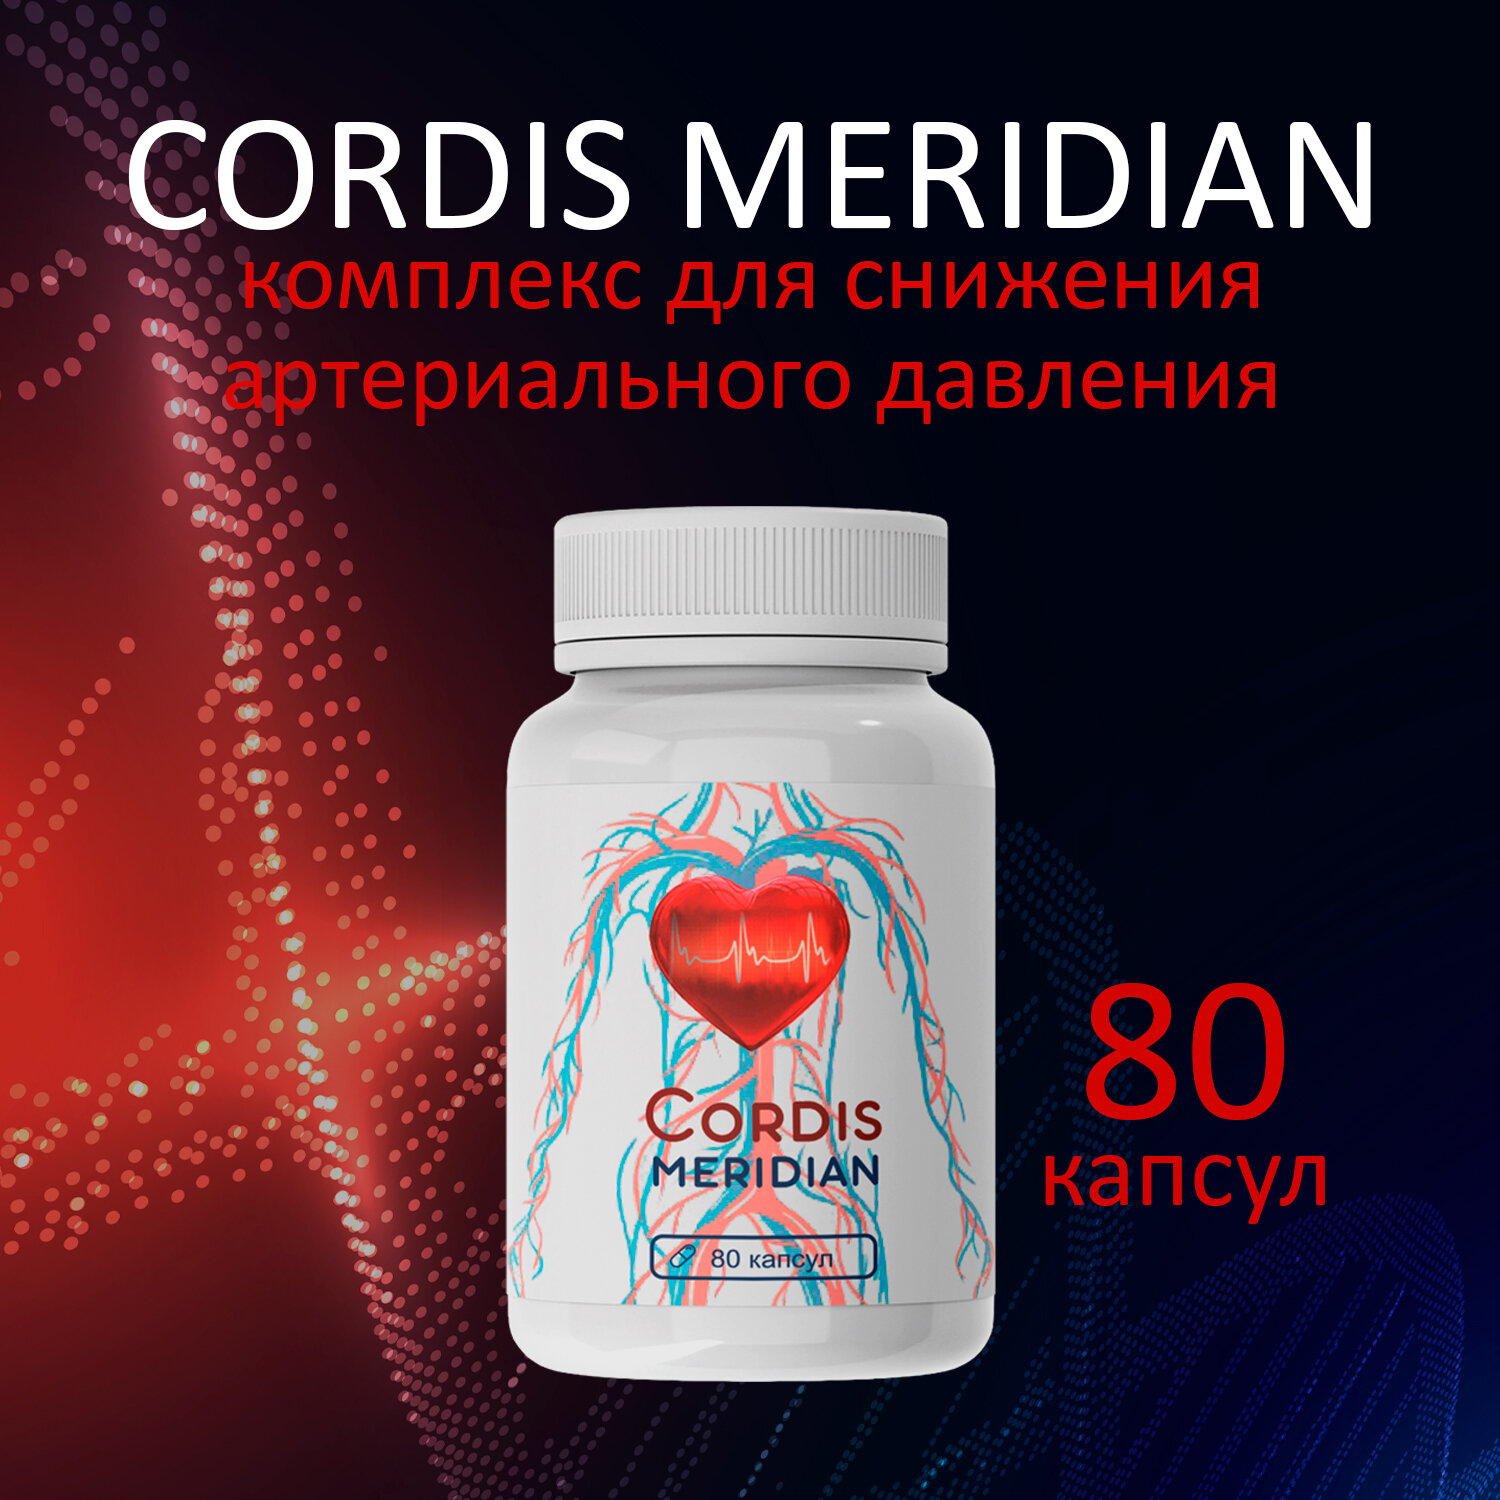 Кордис сердце cосуды, биоактивный комплекс 80 капсул